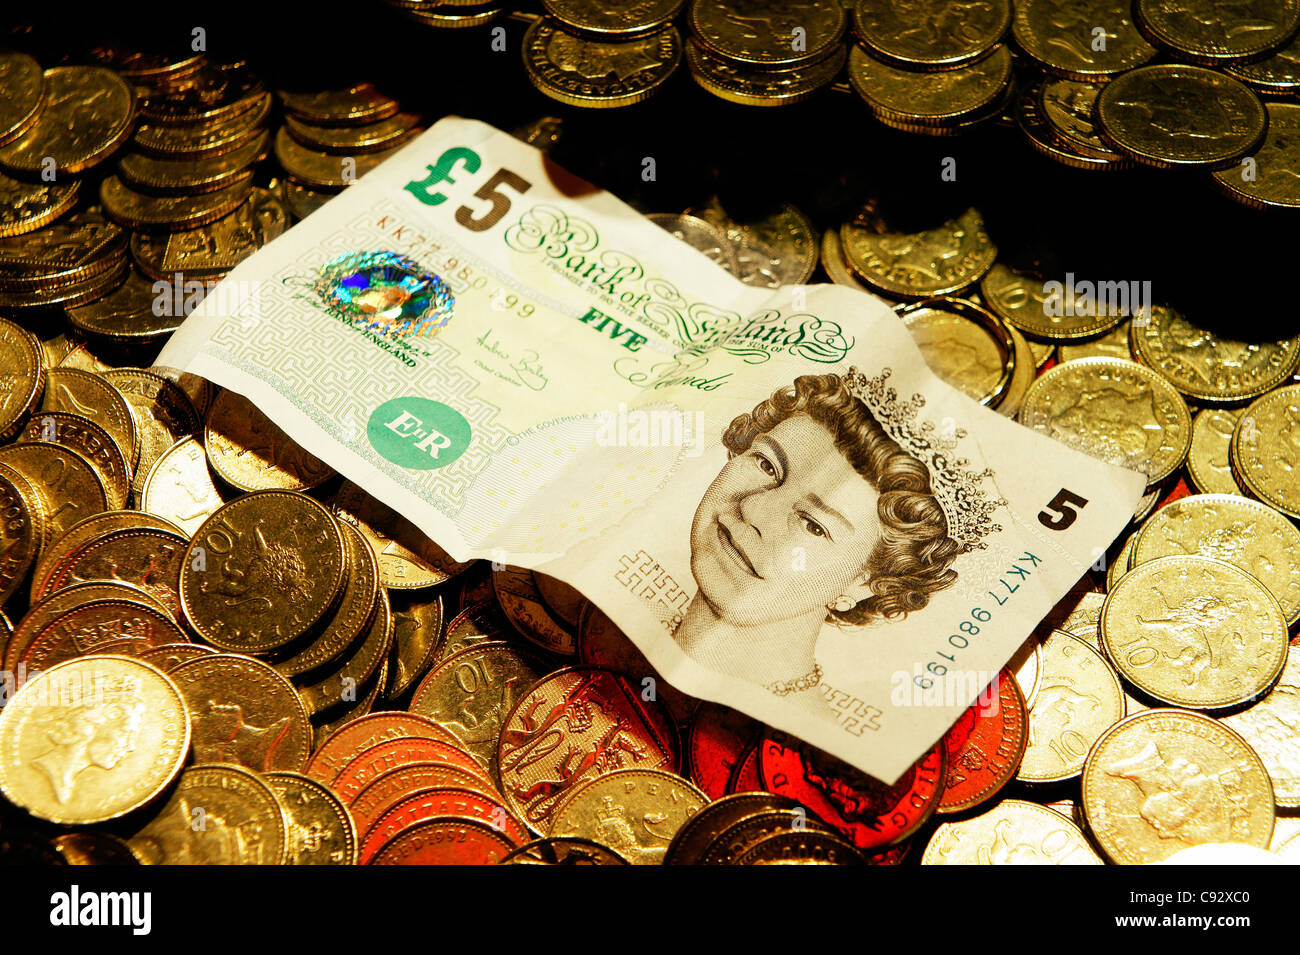 Focalisation étroite délibérée. UK de monnaie et Queen's head 5 lb bank note. Station de jeux électroniques Penny Falls machine de jeu Banque D'Images